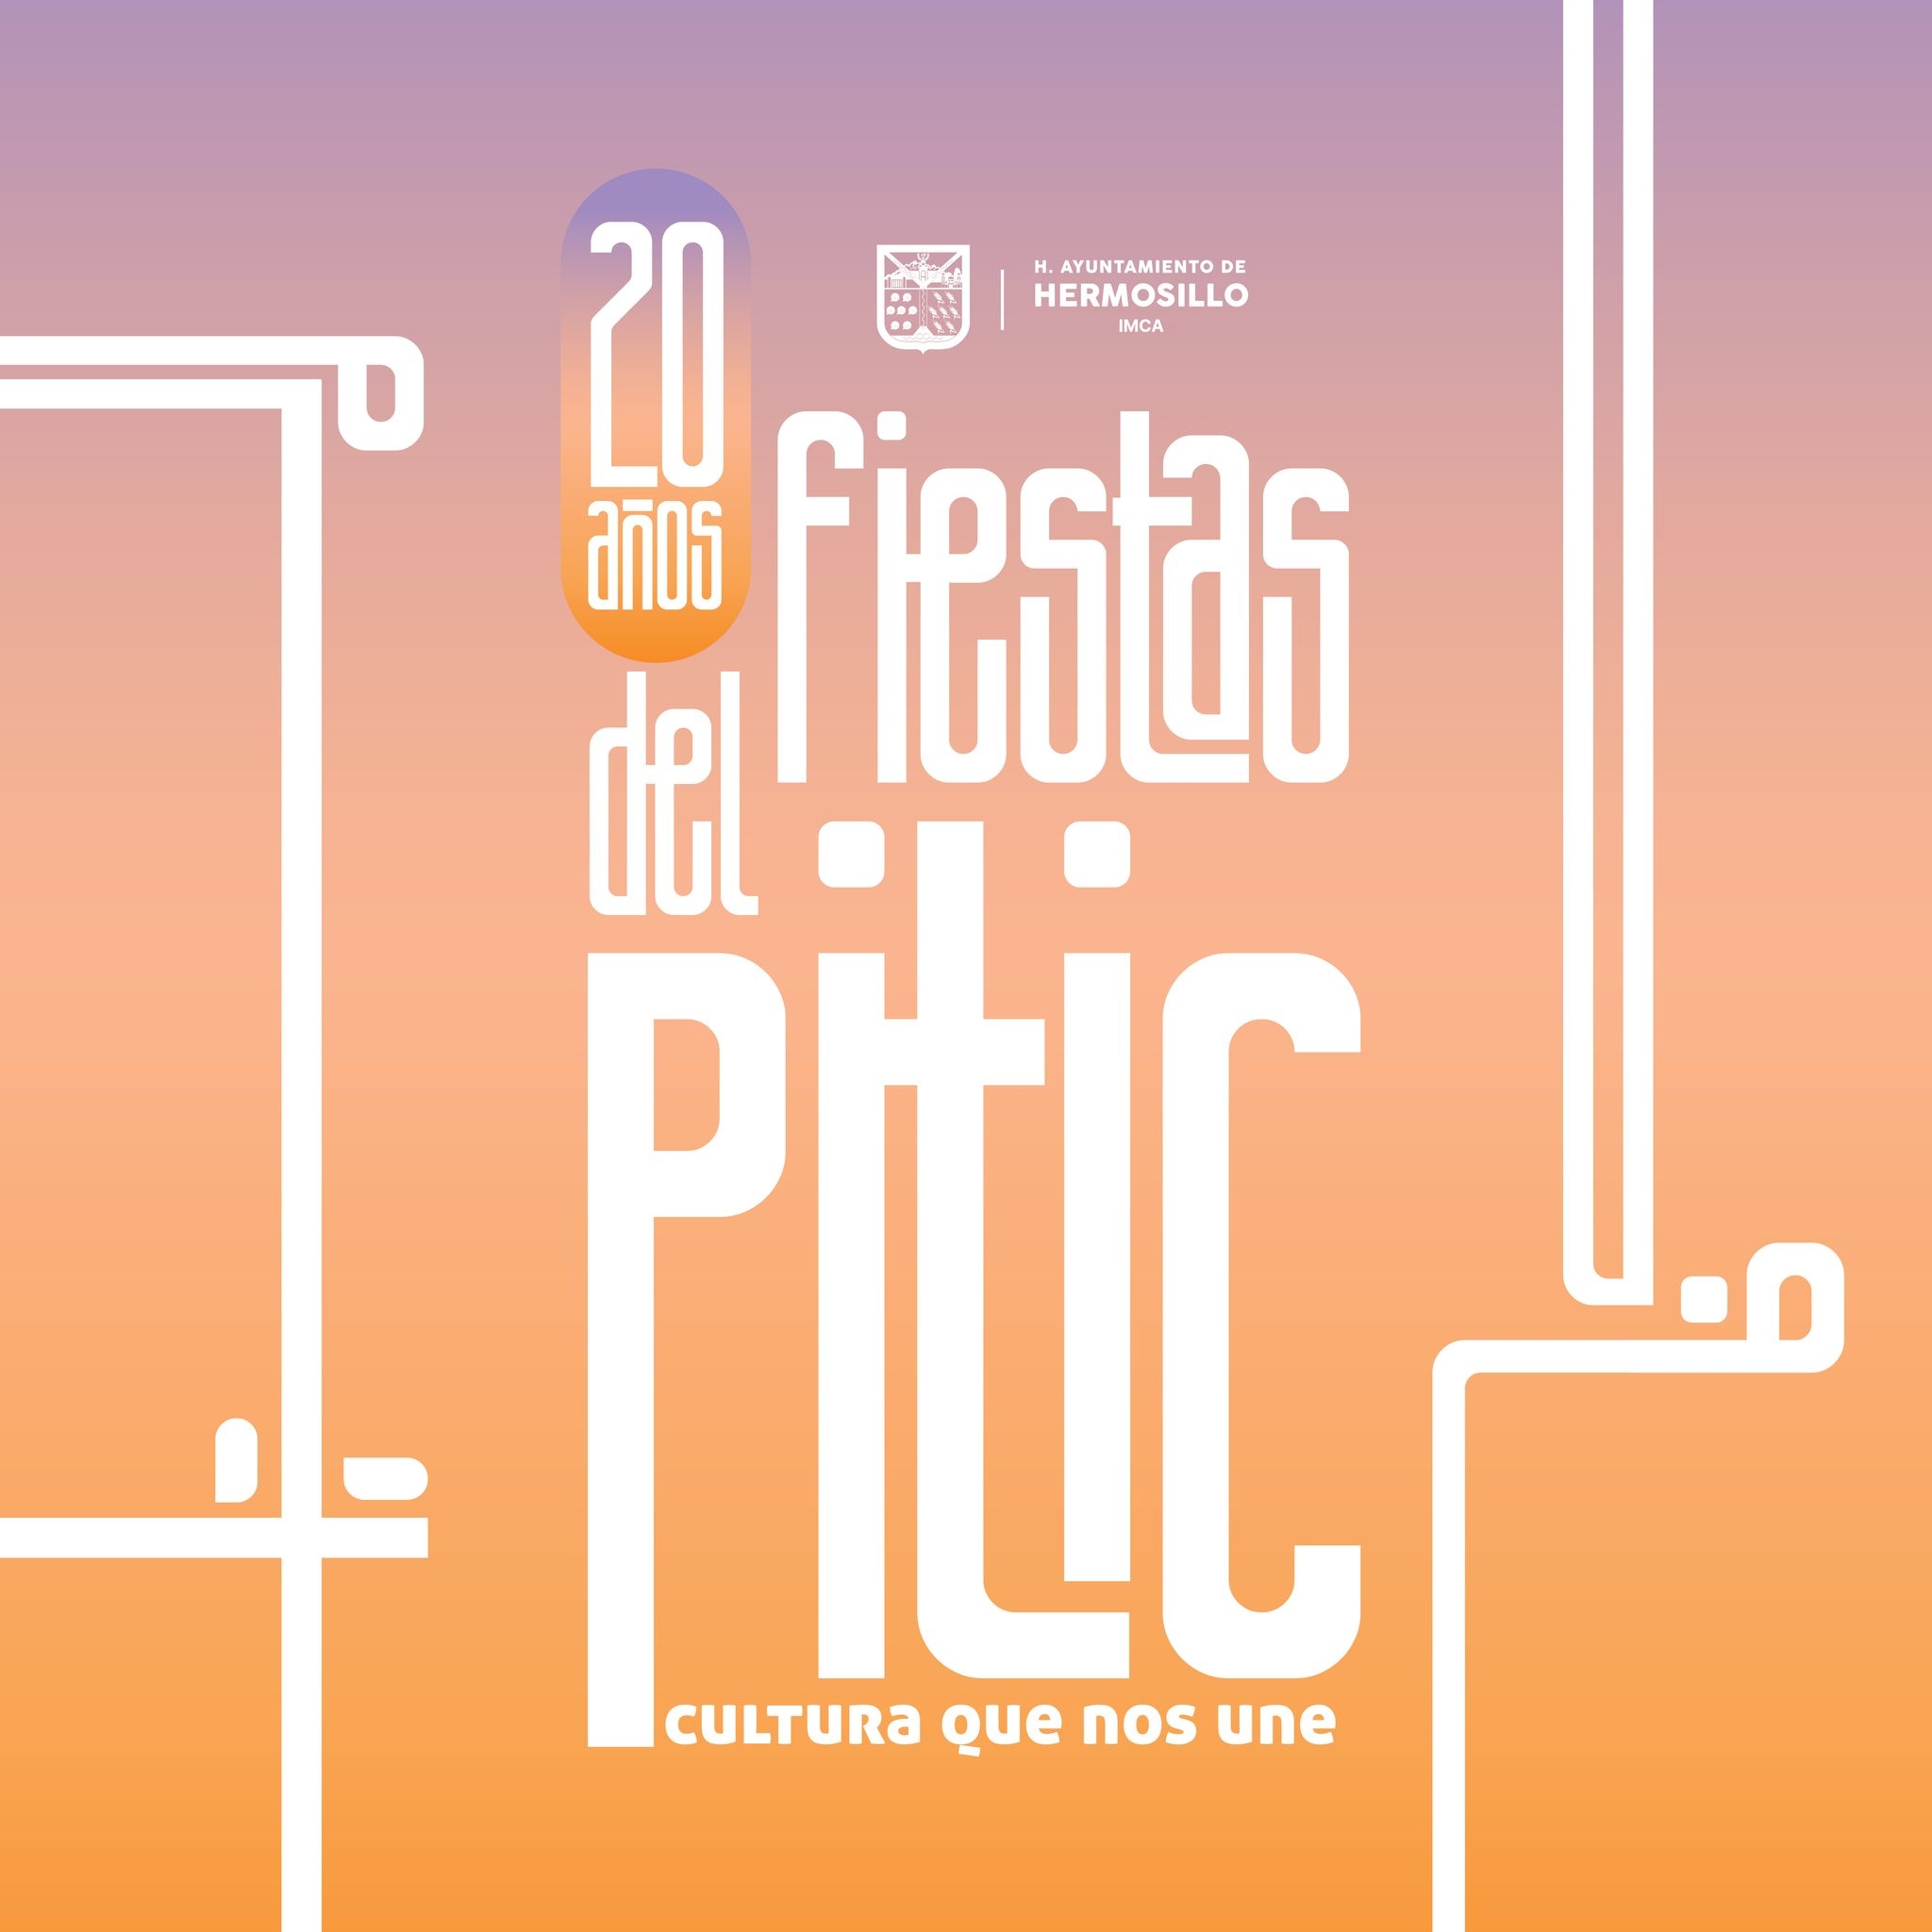 Fiestas del Pitic Festivales México Sistema de Información Cultural